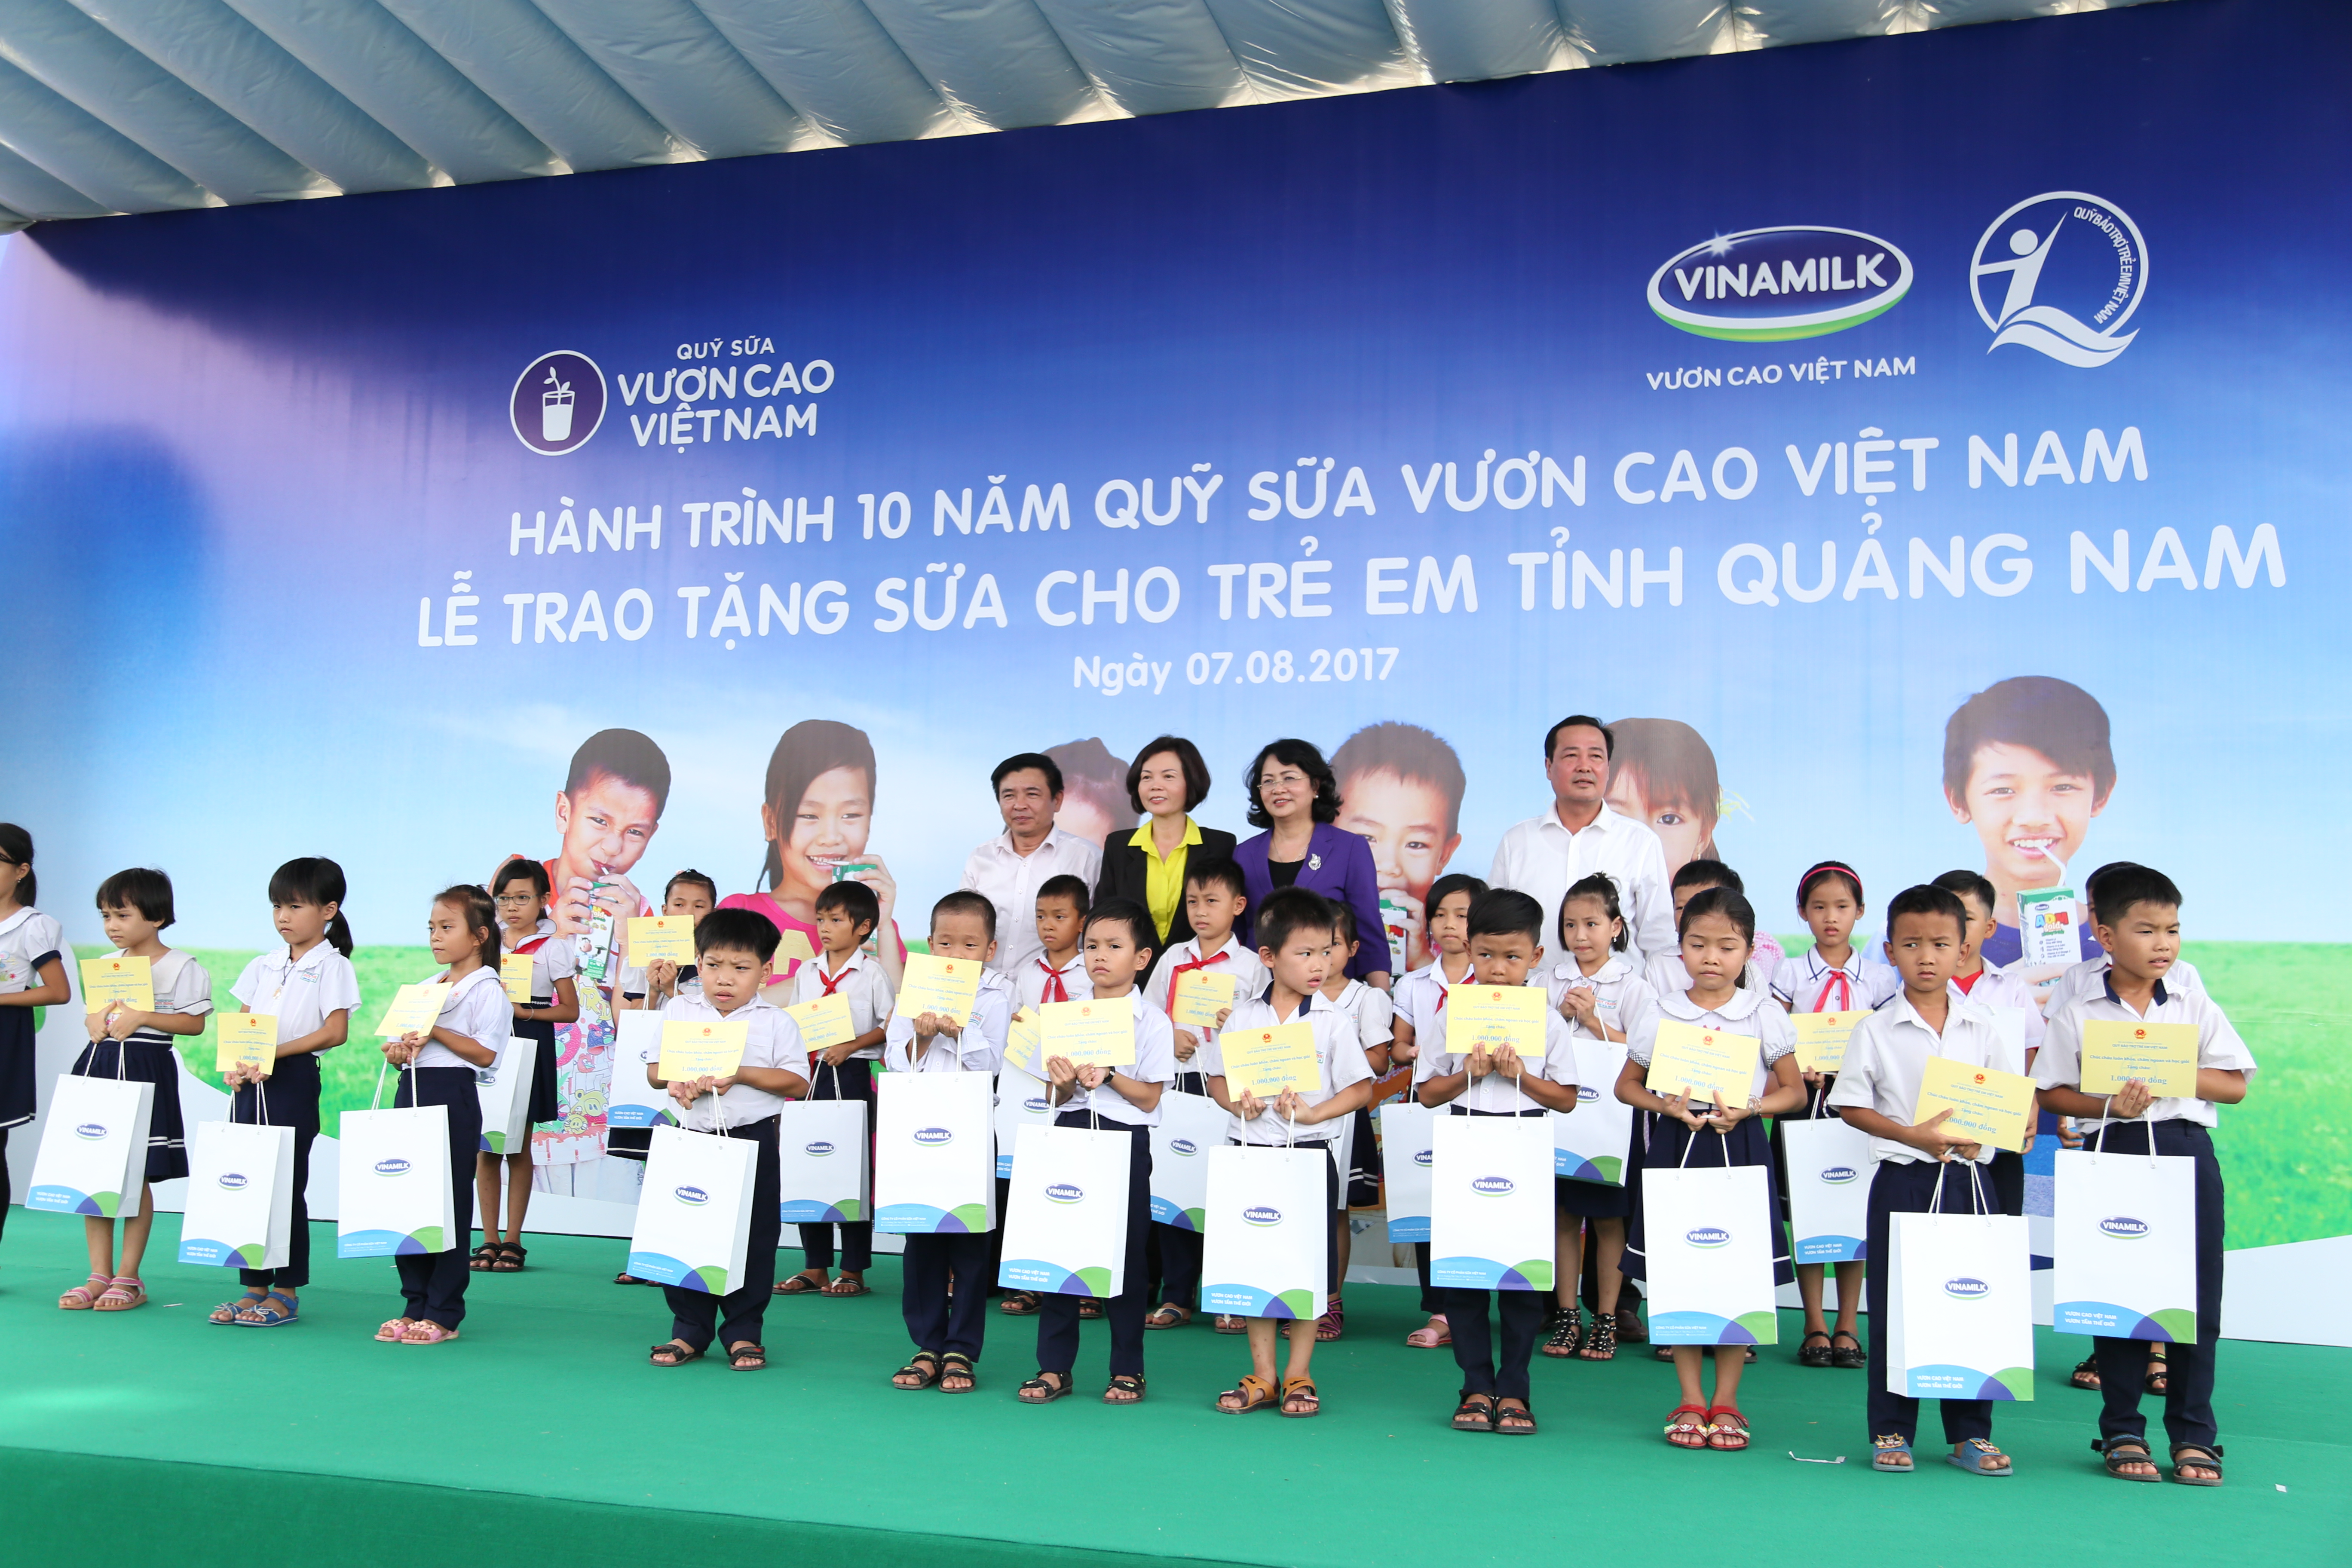 Bà Bùi Thị Hương – Giám đốc Điều hành Vinamilk và đại diện tỉnh Quảng Nam trao học bổng cho các em học sinh tiêu biểu.